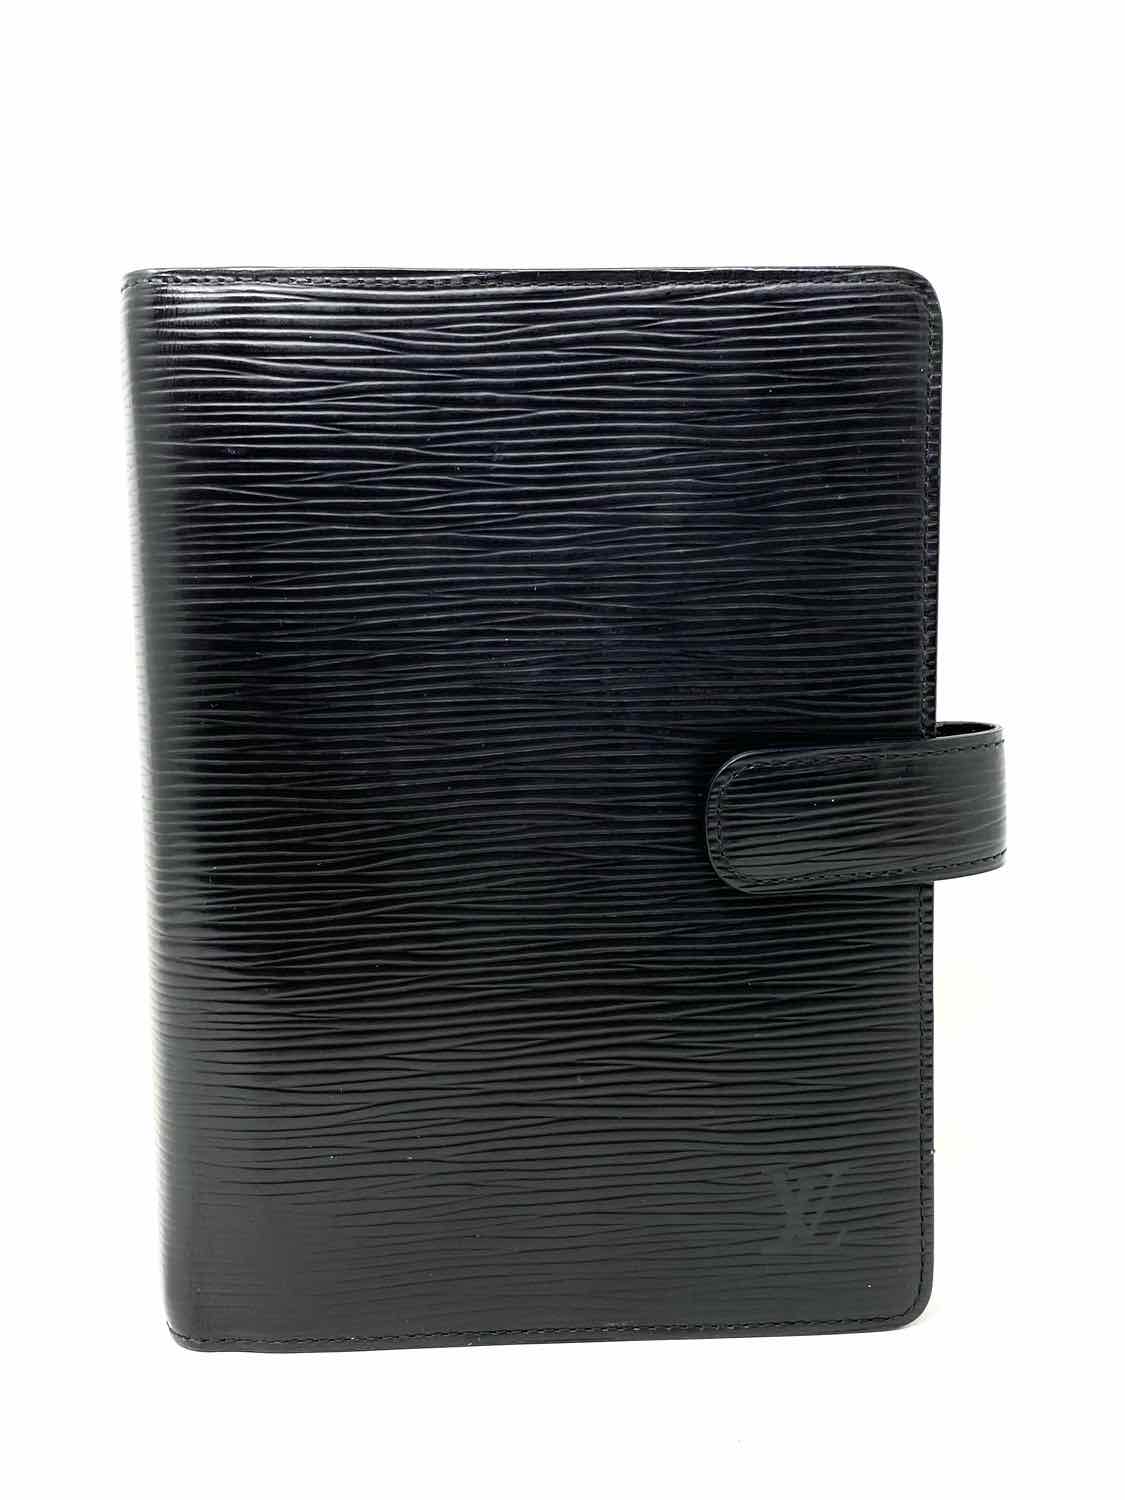 LOUIS VUITTON 1997 Agenda MM Epi leather black Wallet - Default